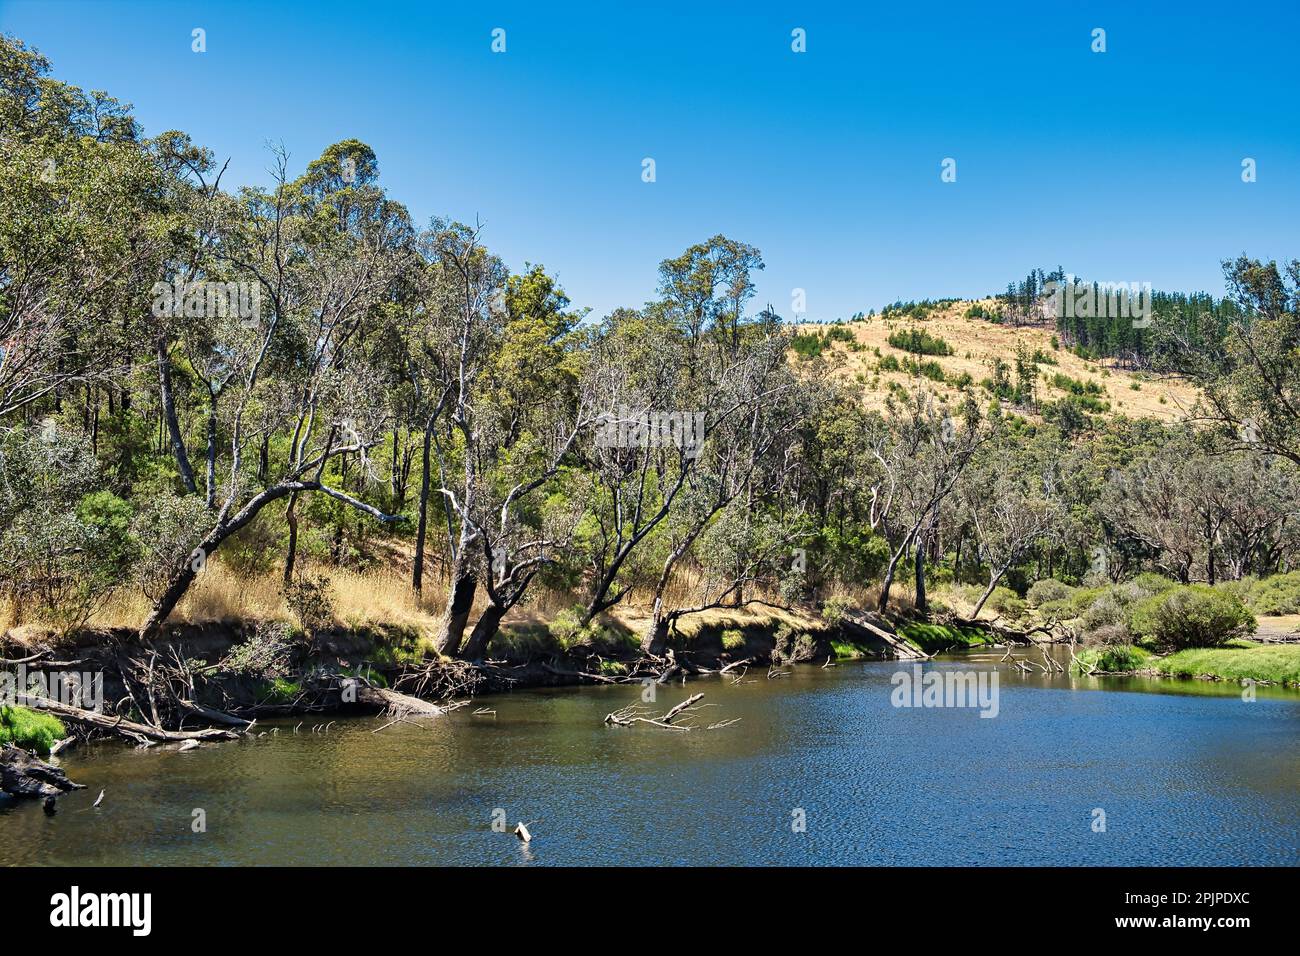 La rivière Blackwood qui traverse la forêt près du pont Wrights dans la réserve naturelle de Powlalup, près de Nannup, dans le sud-ouest de l'Australie occidentale Banque D'Images